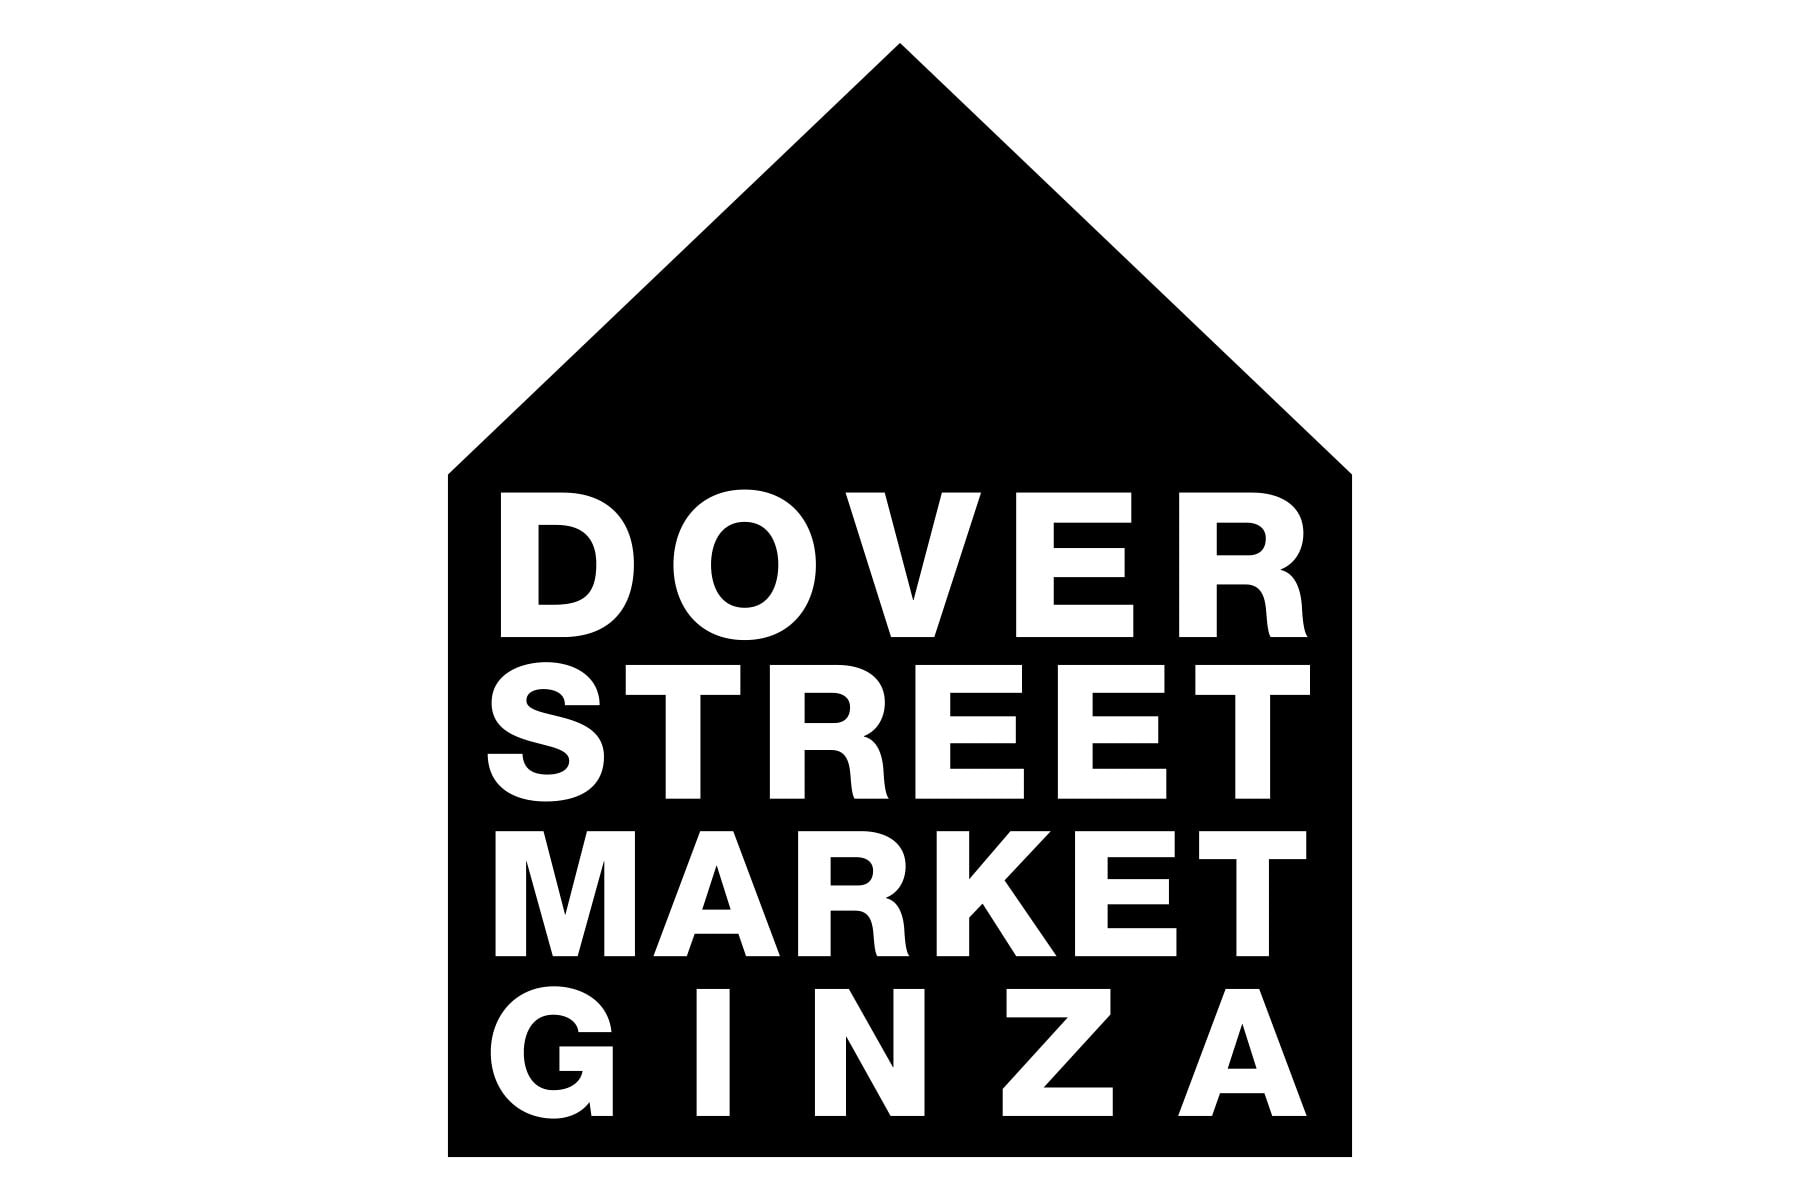 ドーバーストリートマーケット銀座 DOVER STREET MARKET GINZA が1日限定のスペシャルイベント“オープンハウス” open houseを開催